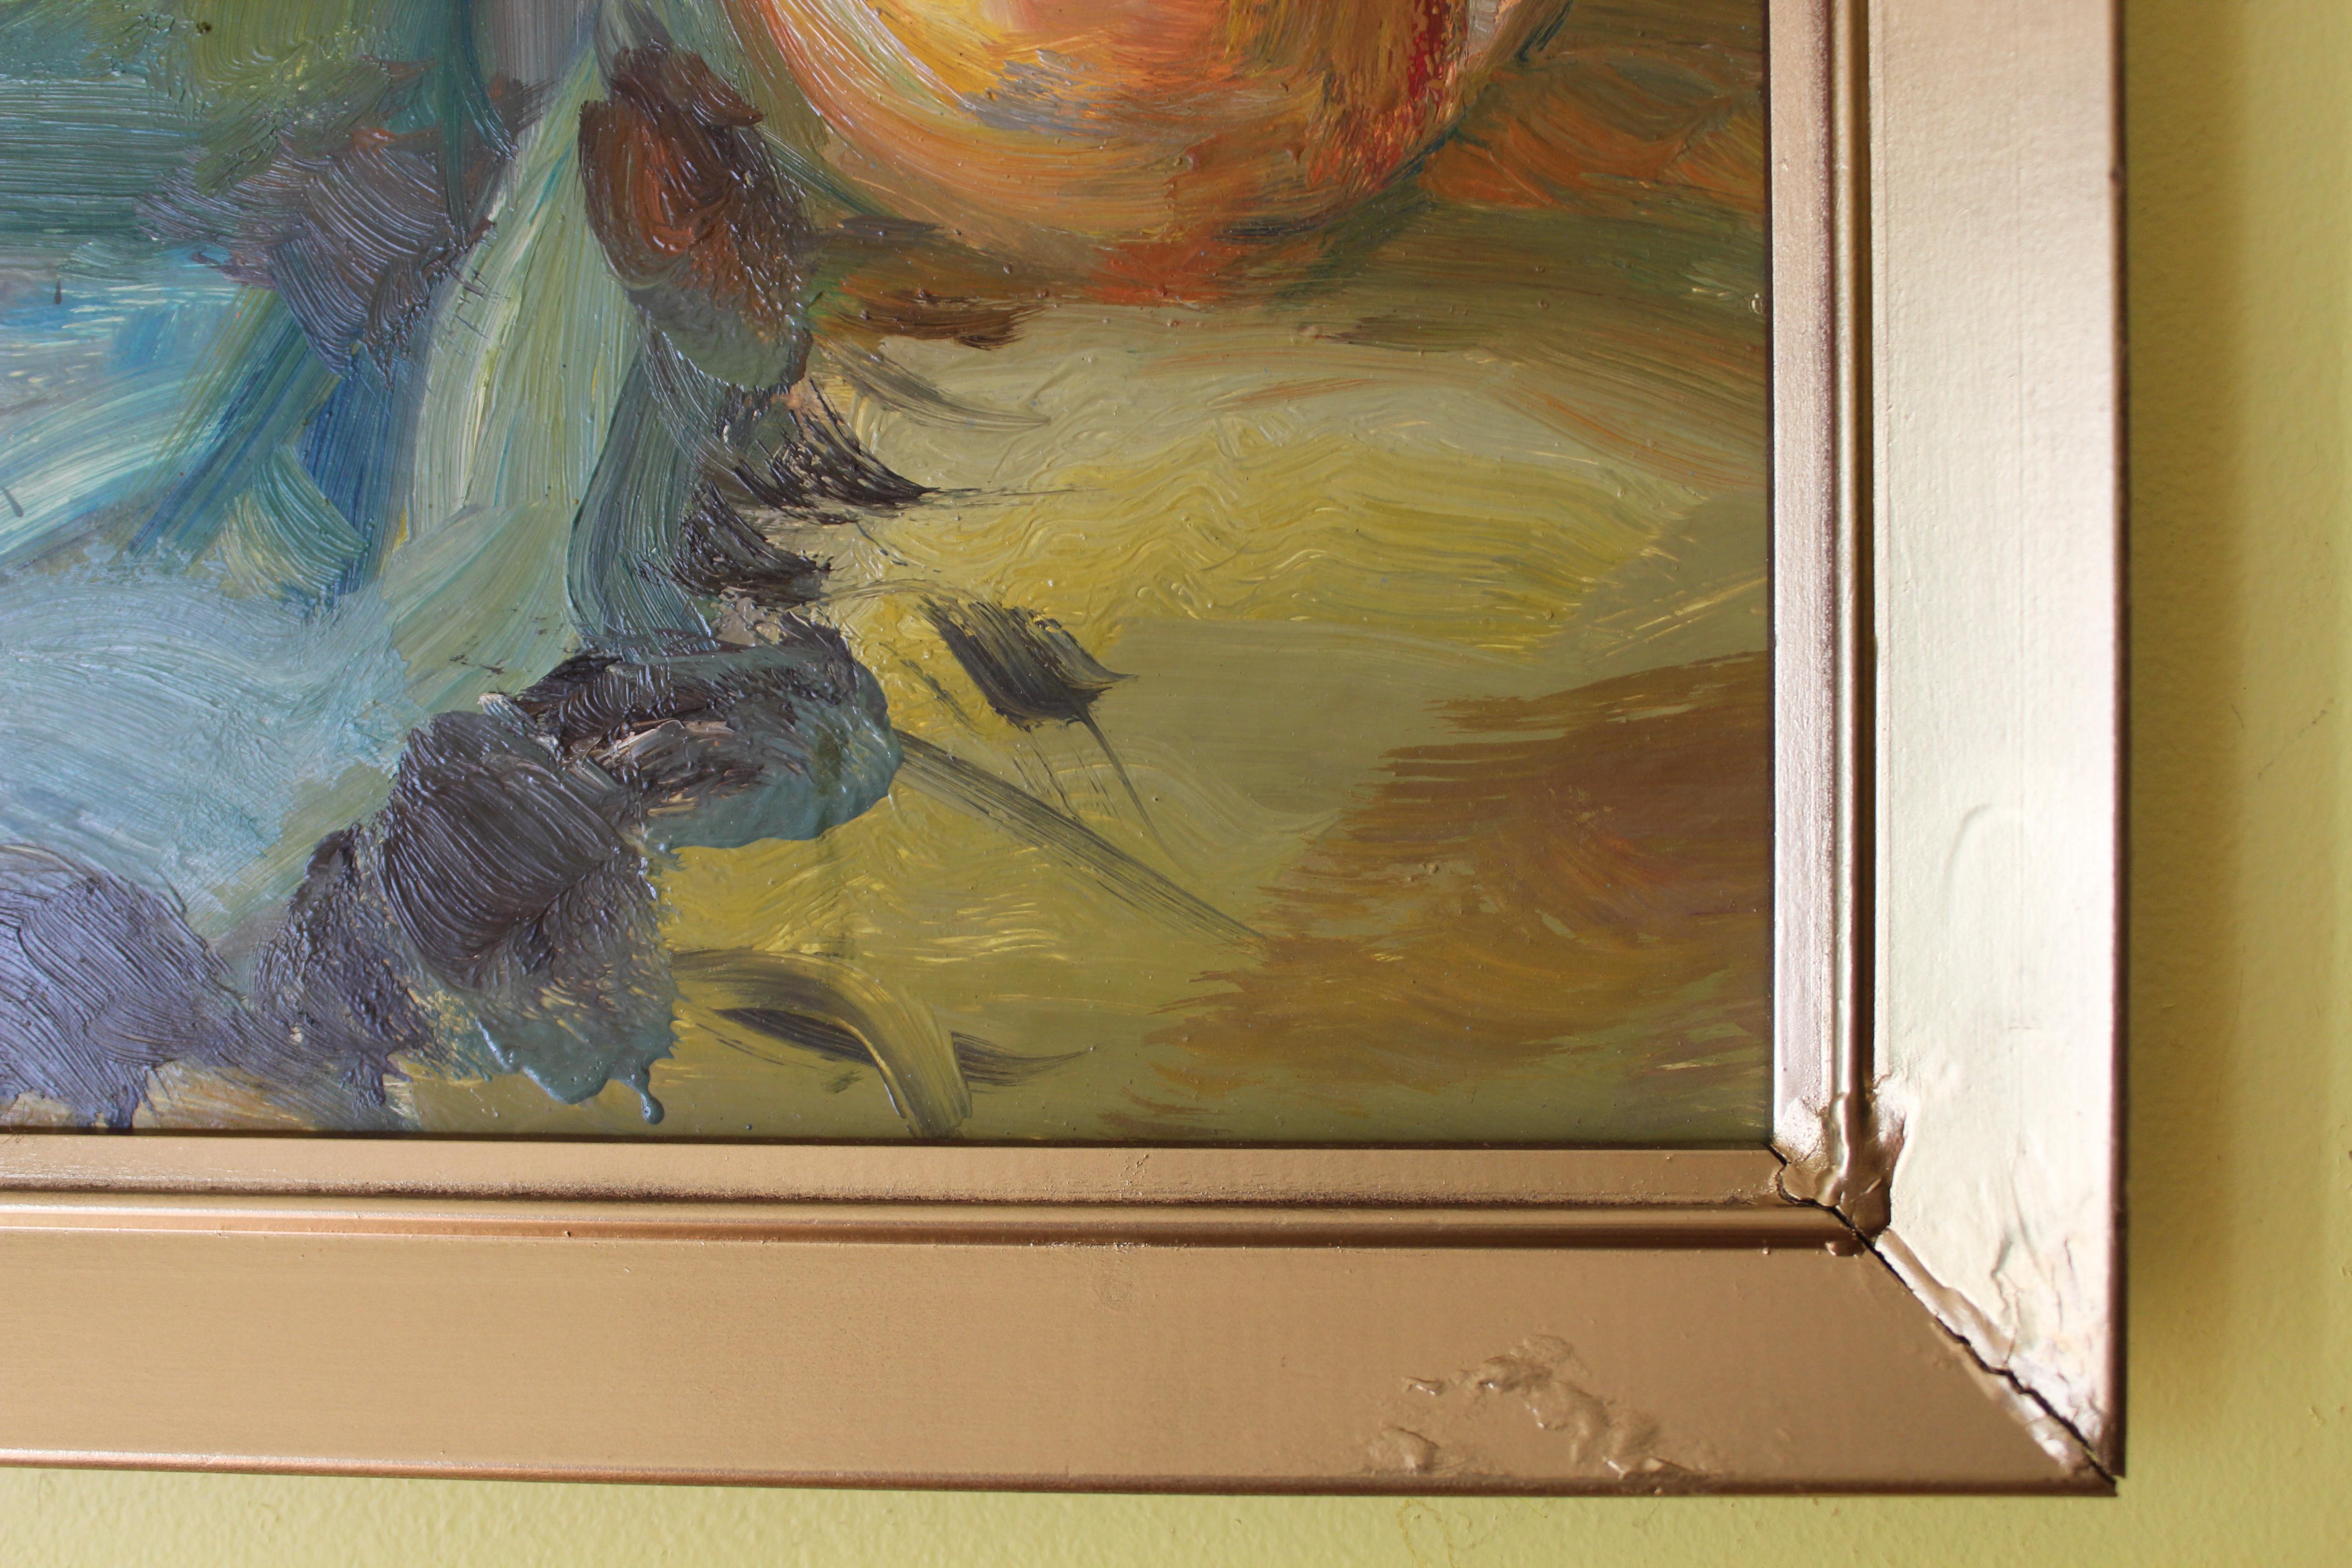 Il s'agit d'une rare peinture à l'huile sur panneau signée par le célèbre artiste biélorusse E.G. Korobushkin, représentant une nature morte - un vase avec des fruits et une tasse de thé sur une table. 

Signé au dos de la toile 